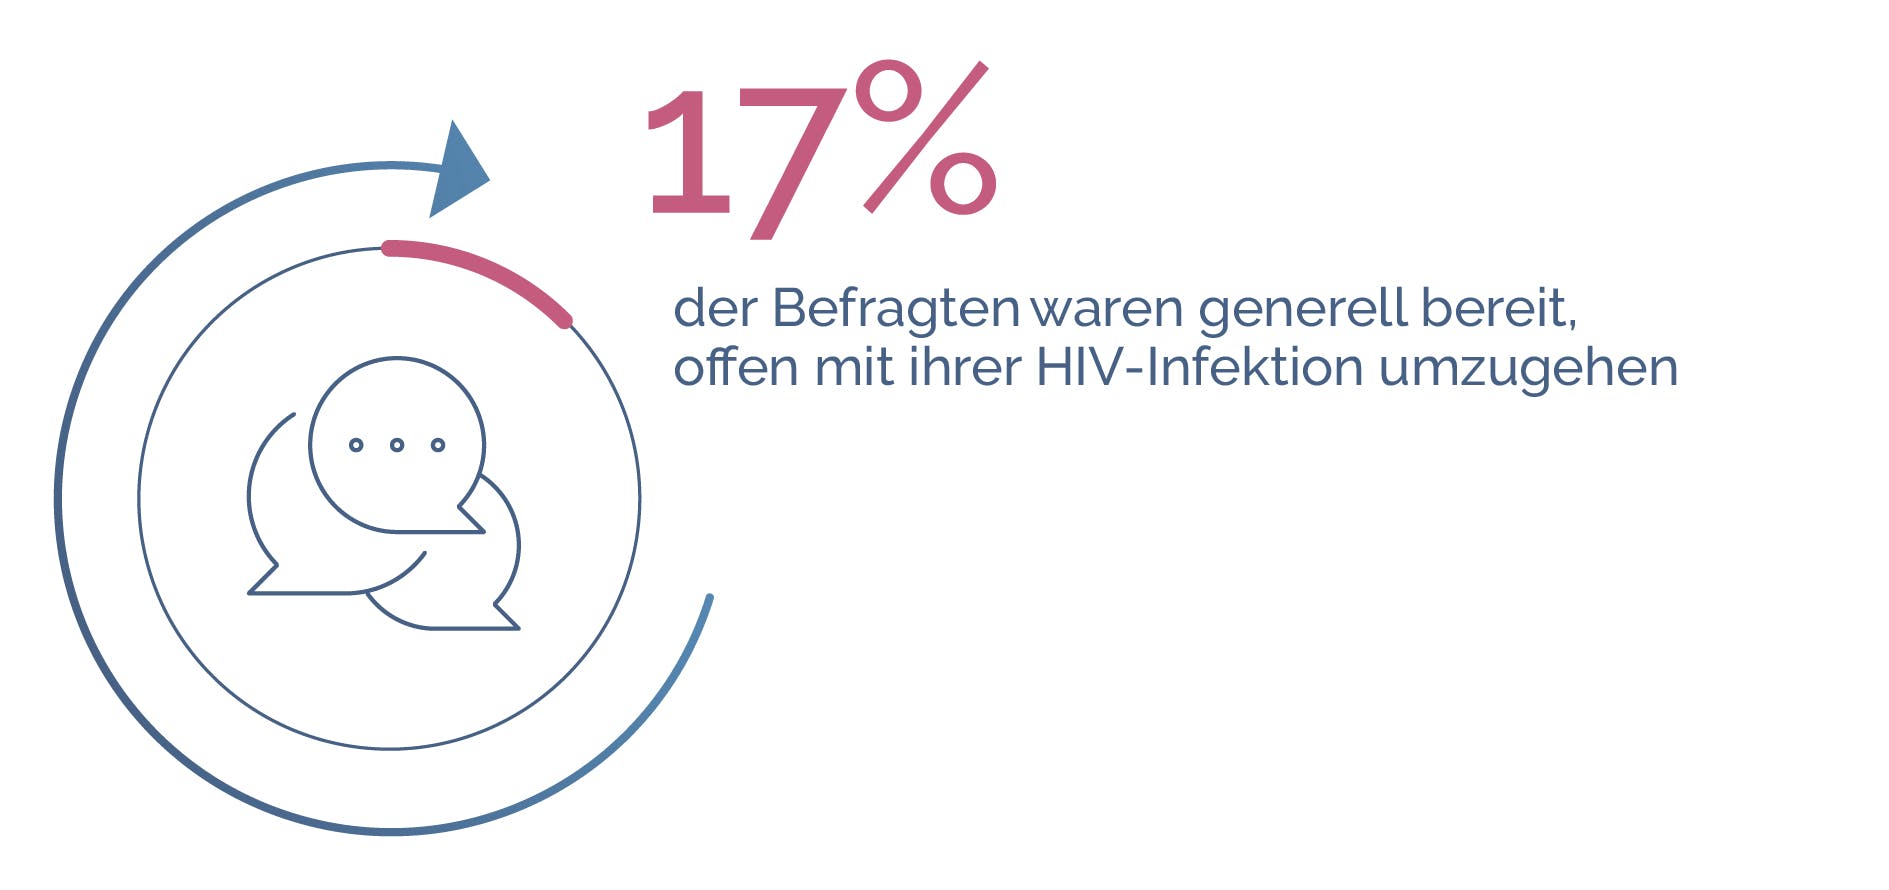 HIV und Stigmatisierung, Erfahrung von Menschen mit HIV